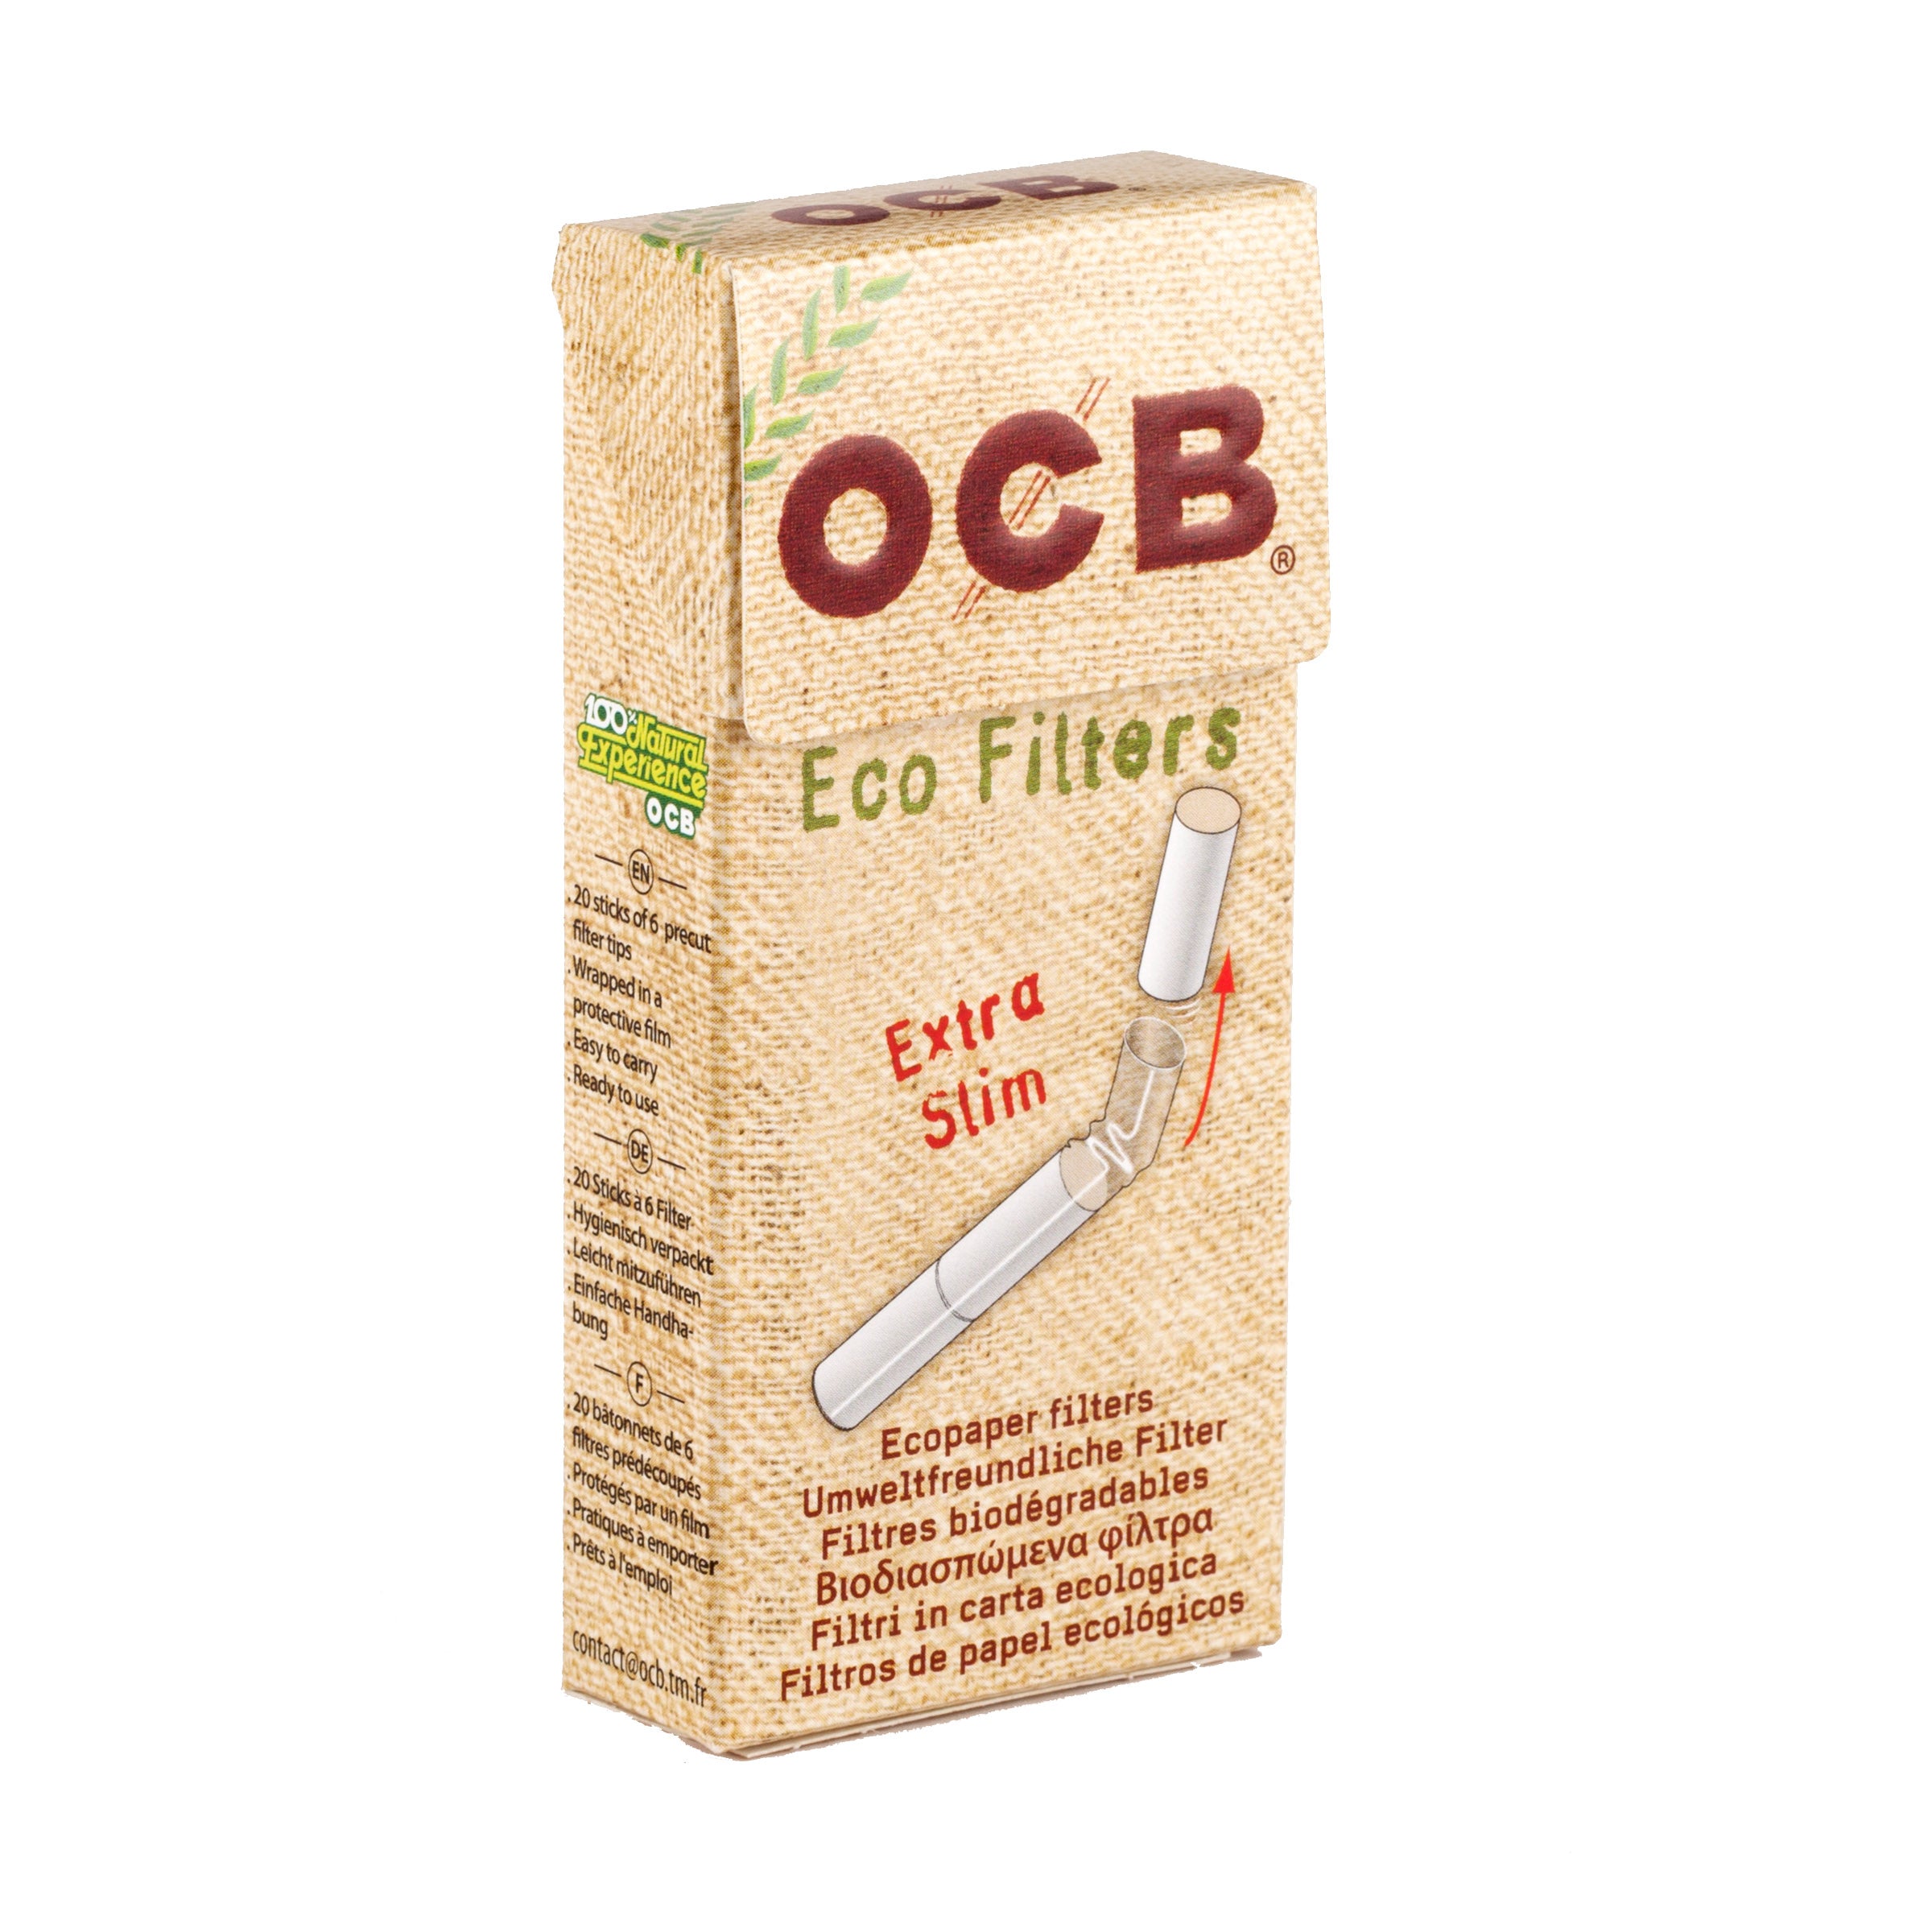  OCB Slim Cigarette Filter Tips - 5 x 150 Filters